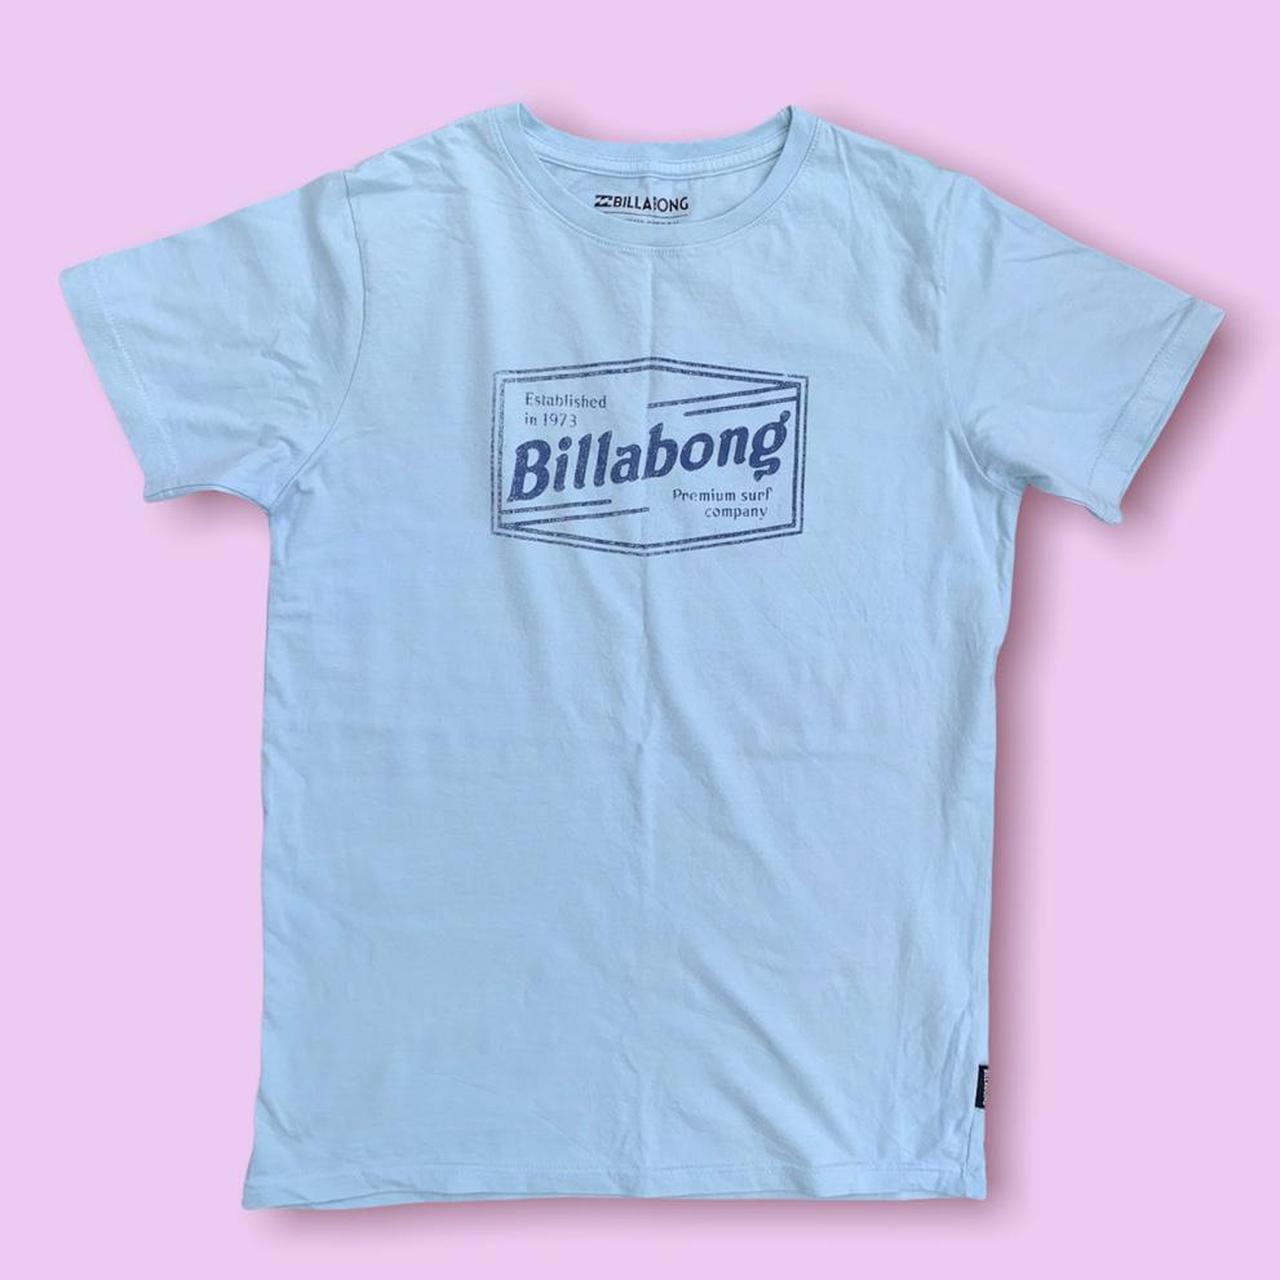 Product Image 1 - • Baby Blue Billabong t-shirt
•